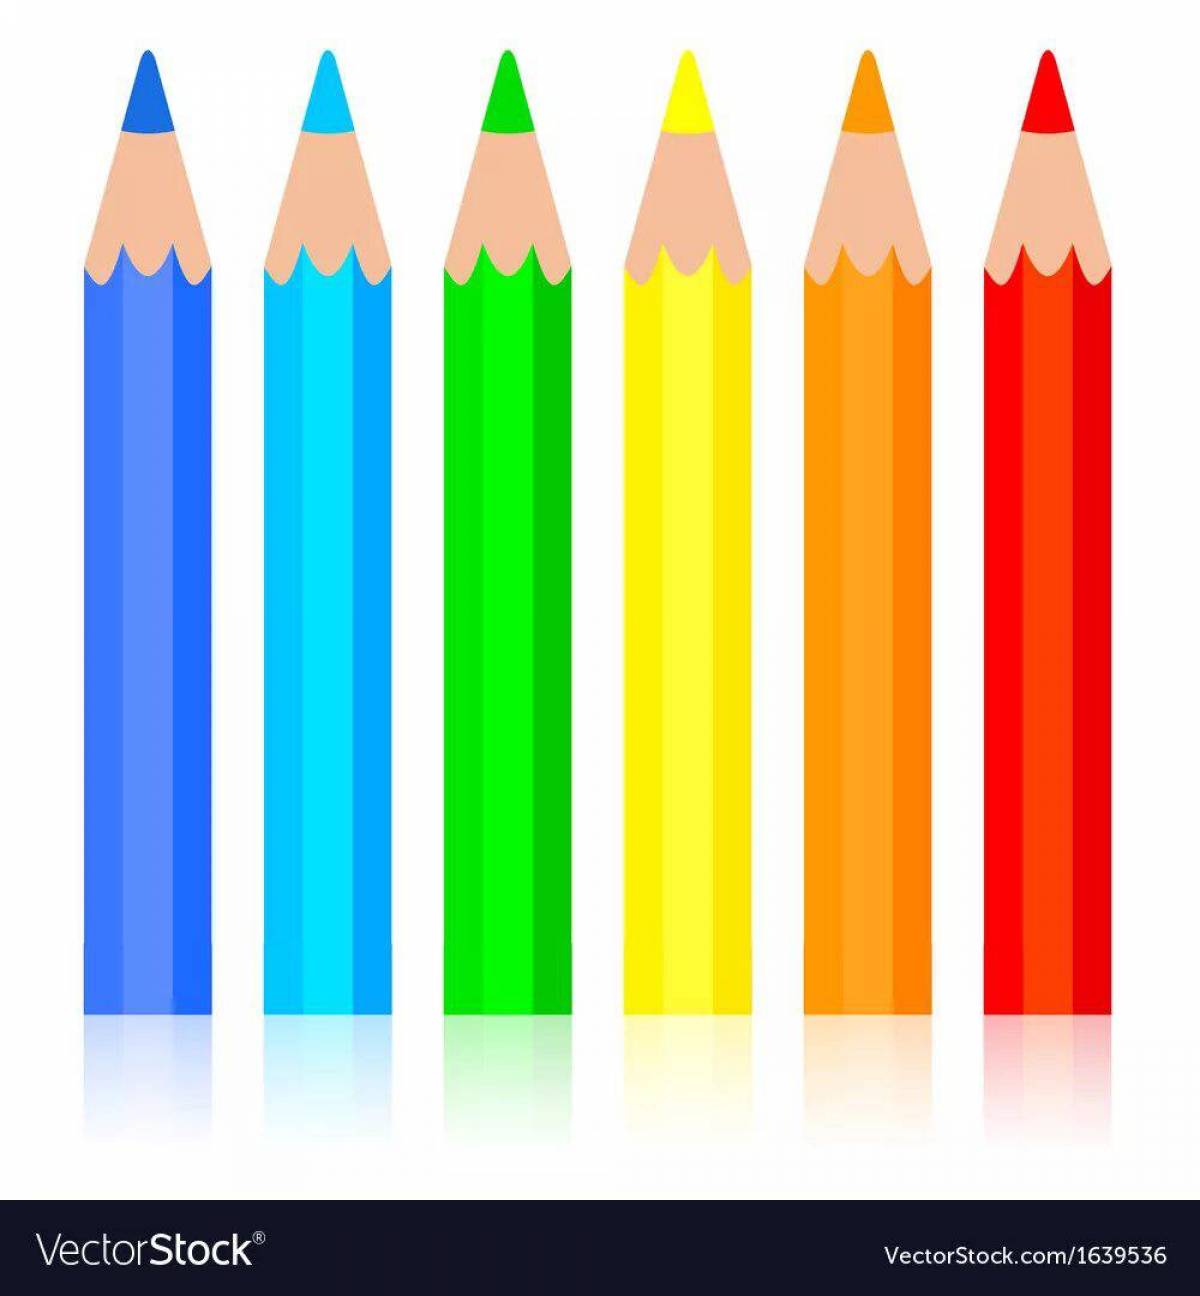 Карандаши цветные задания. Карандаши цветные для распечатки. Цветные карандаши для детей. Цветные карандаши на прозрачном фоне. Клипарт карандаши на прозрачном фоне.